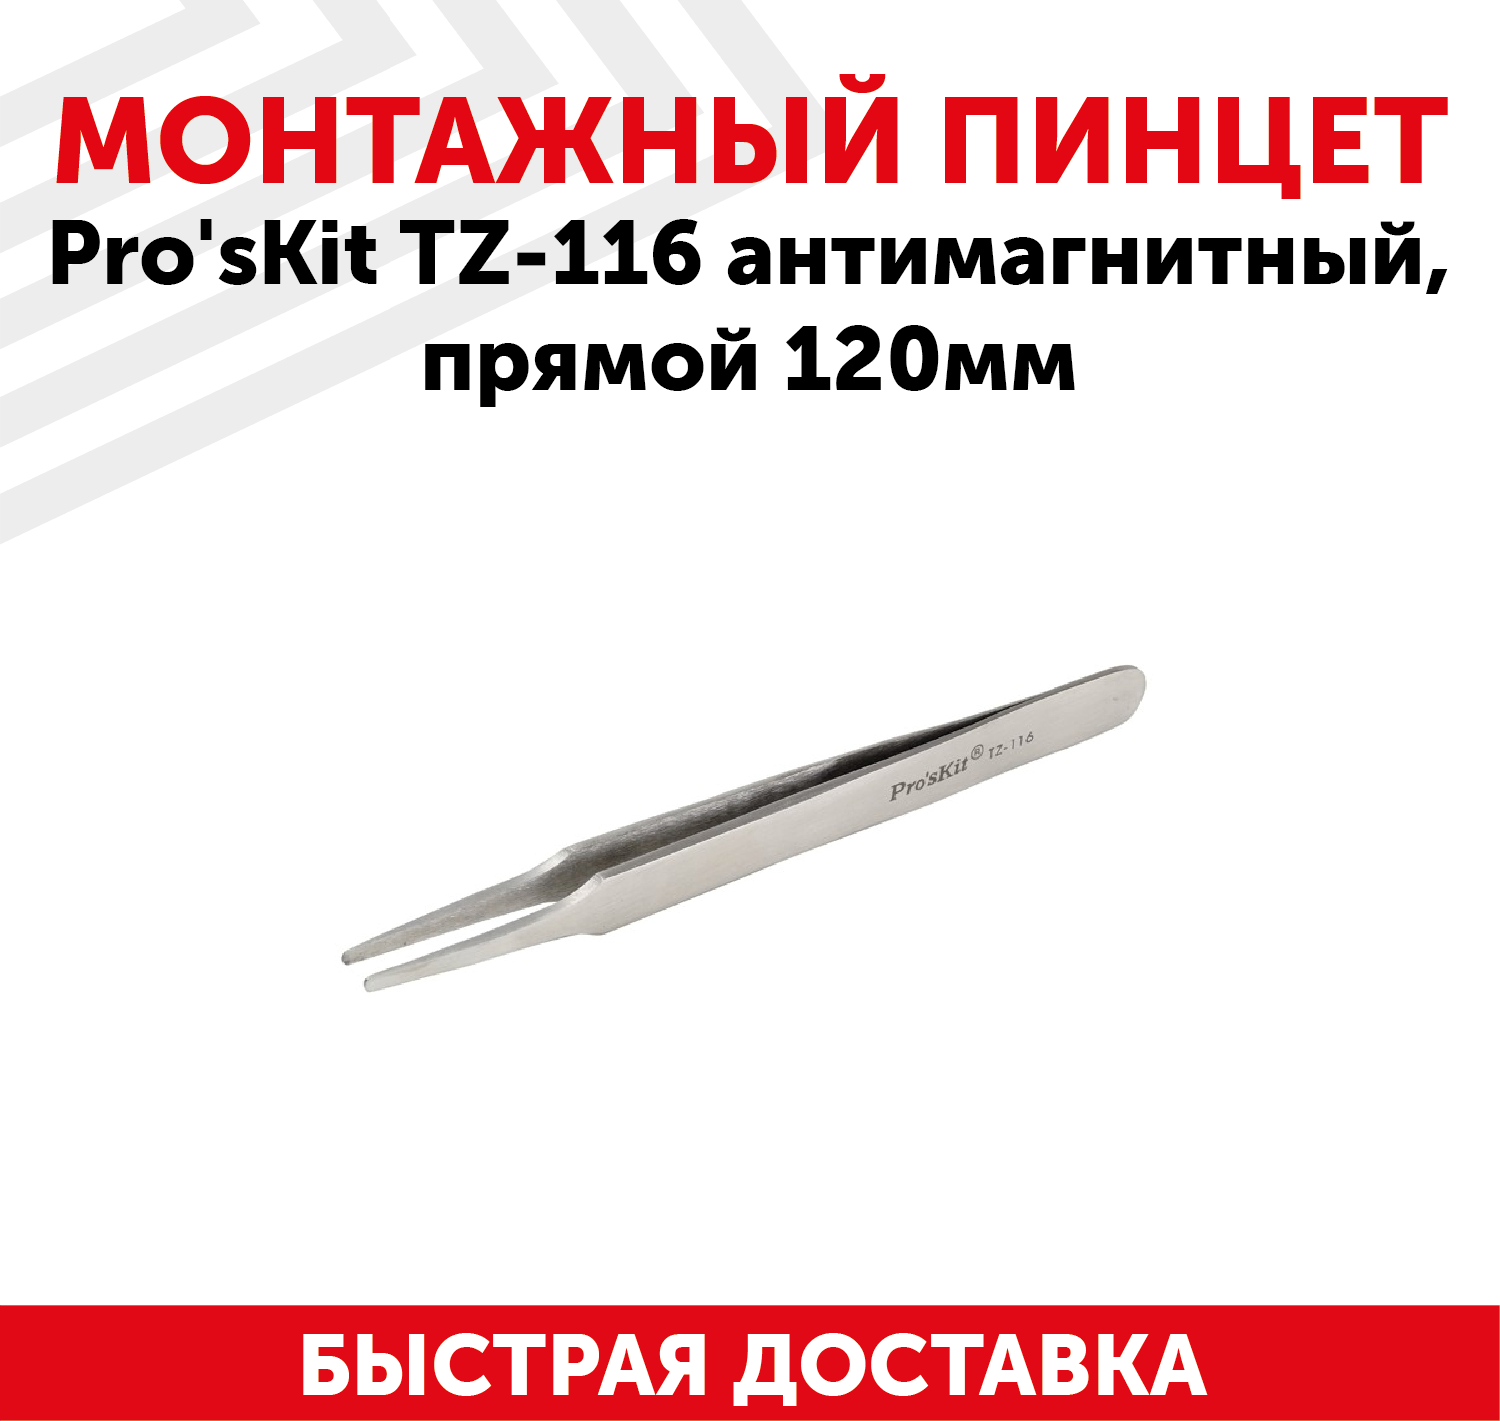 Пинцет Pro'sKit TZ-116 антимагнитный прямой 120мм.